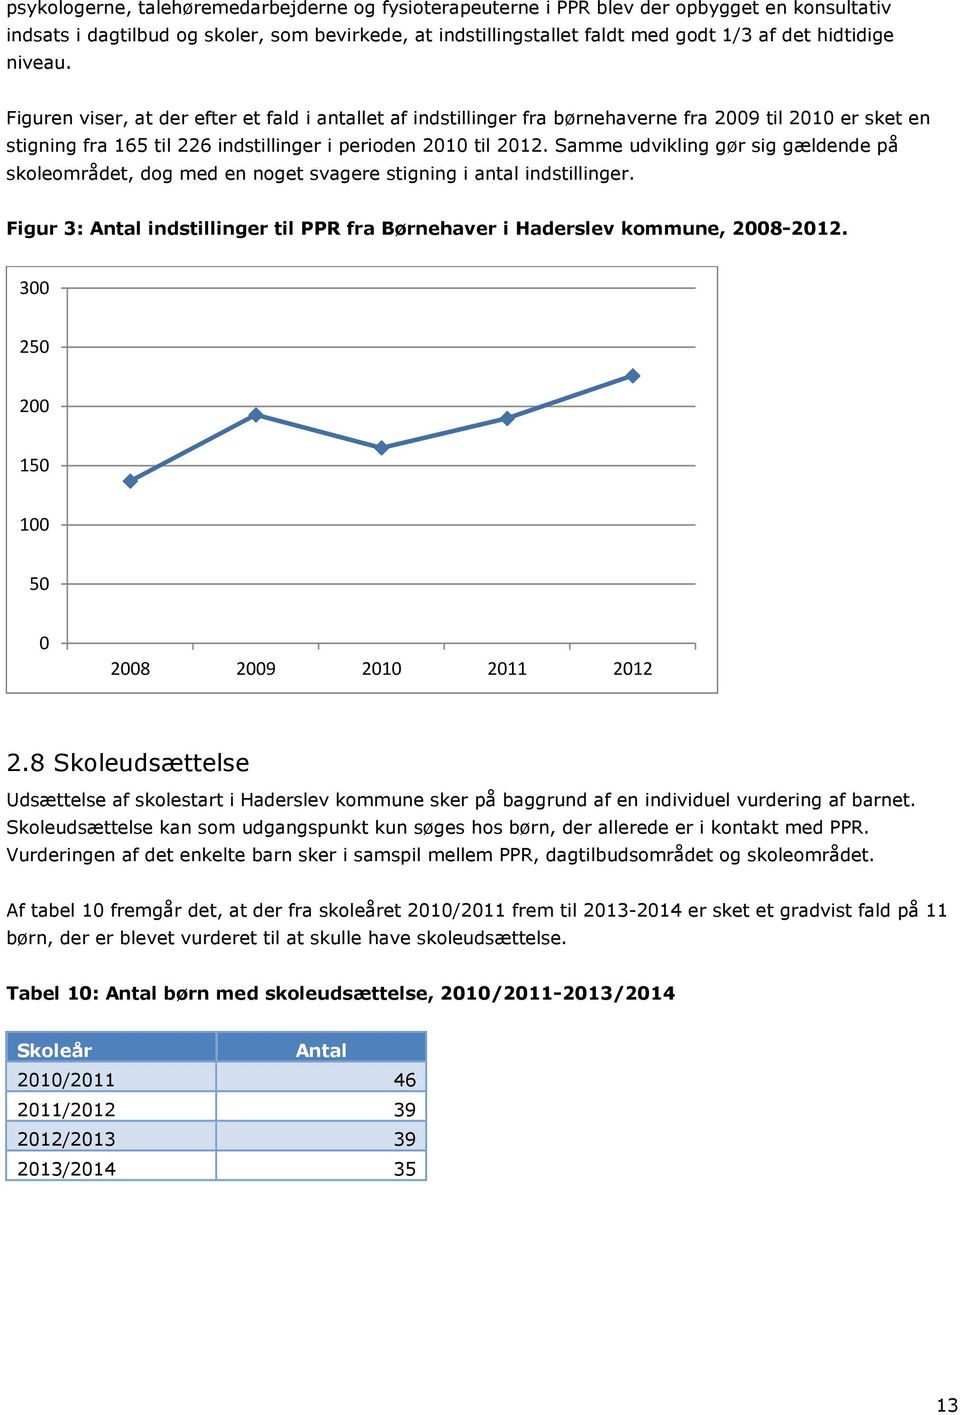 Samme udvikling gør sig gældende på skoleområdet, dog med en noget svagere stigning i antal indstillinger. Figur 3: Antal indstillinger til PPR fra Børnehaver i Haderslev kommune, 2008-2012.